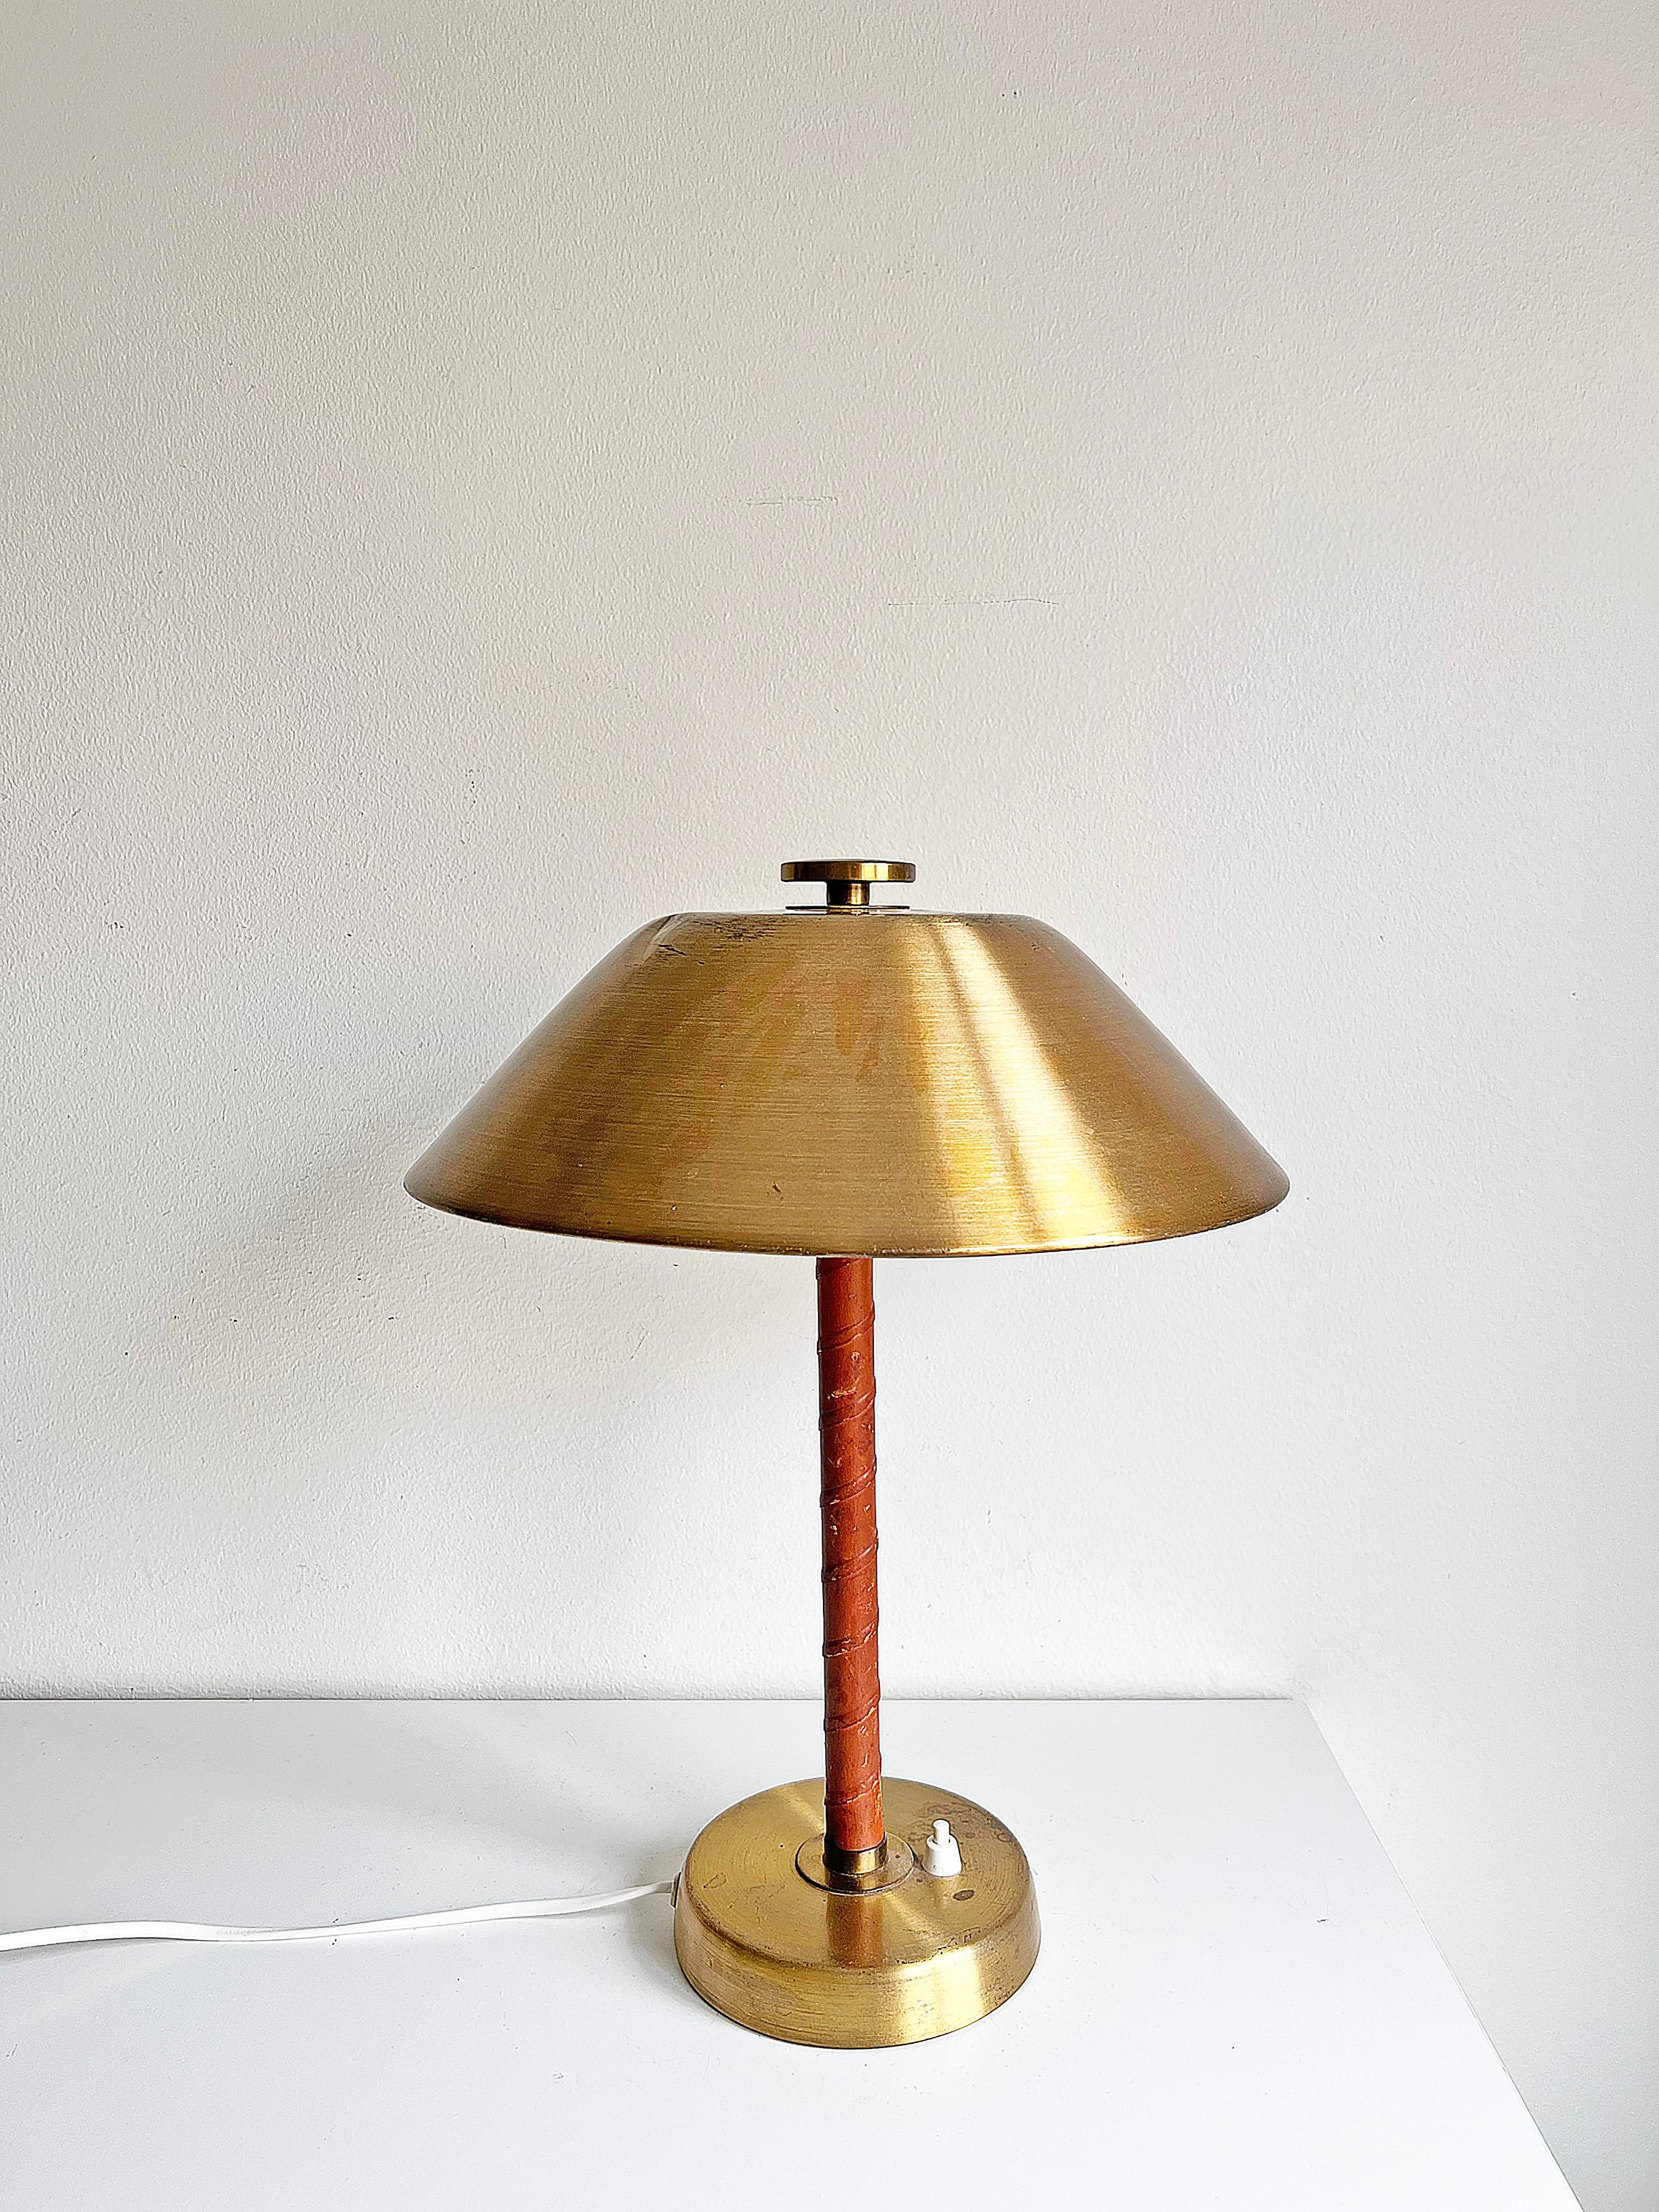 Lampe de table modèle 5014 en laiton et cuir cognac par Einar Bäckström vers les années 1940.
Signé en bas. Recâblé. Nous recommandons que cette lampe soit recâblée selon les normes électriques du pays de l'acheteur.

Condit : Veuillez noter qu'il y